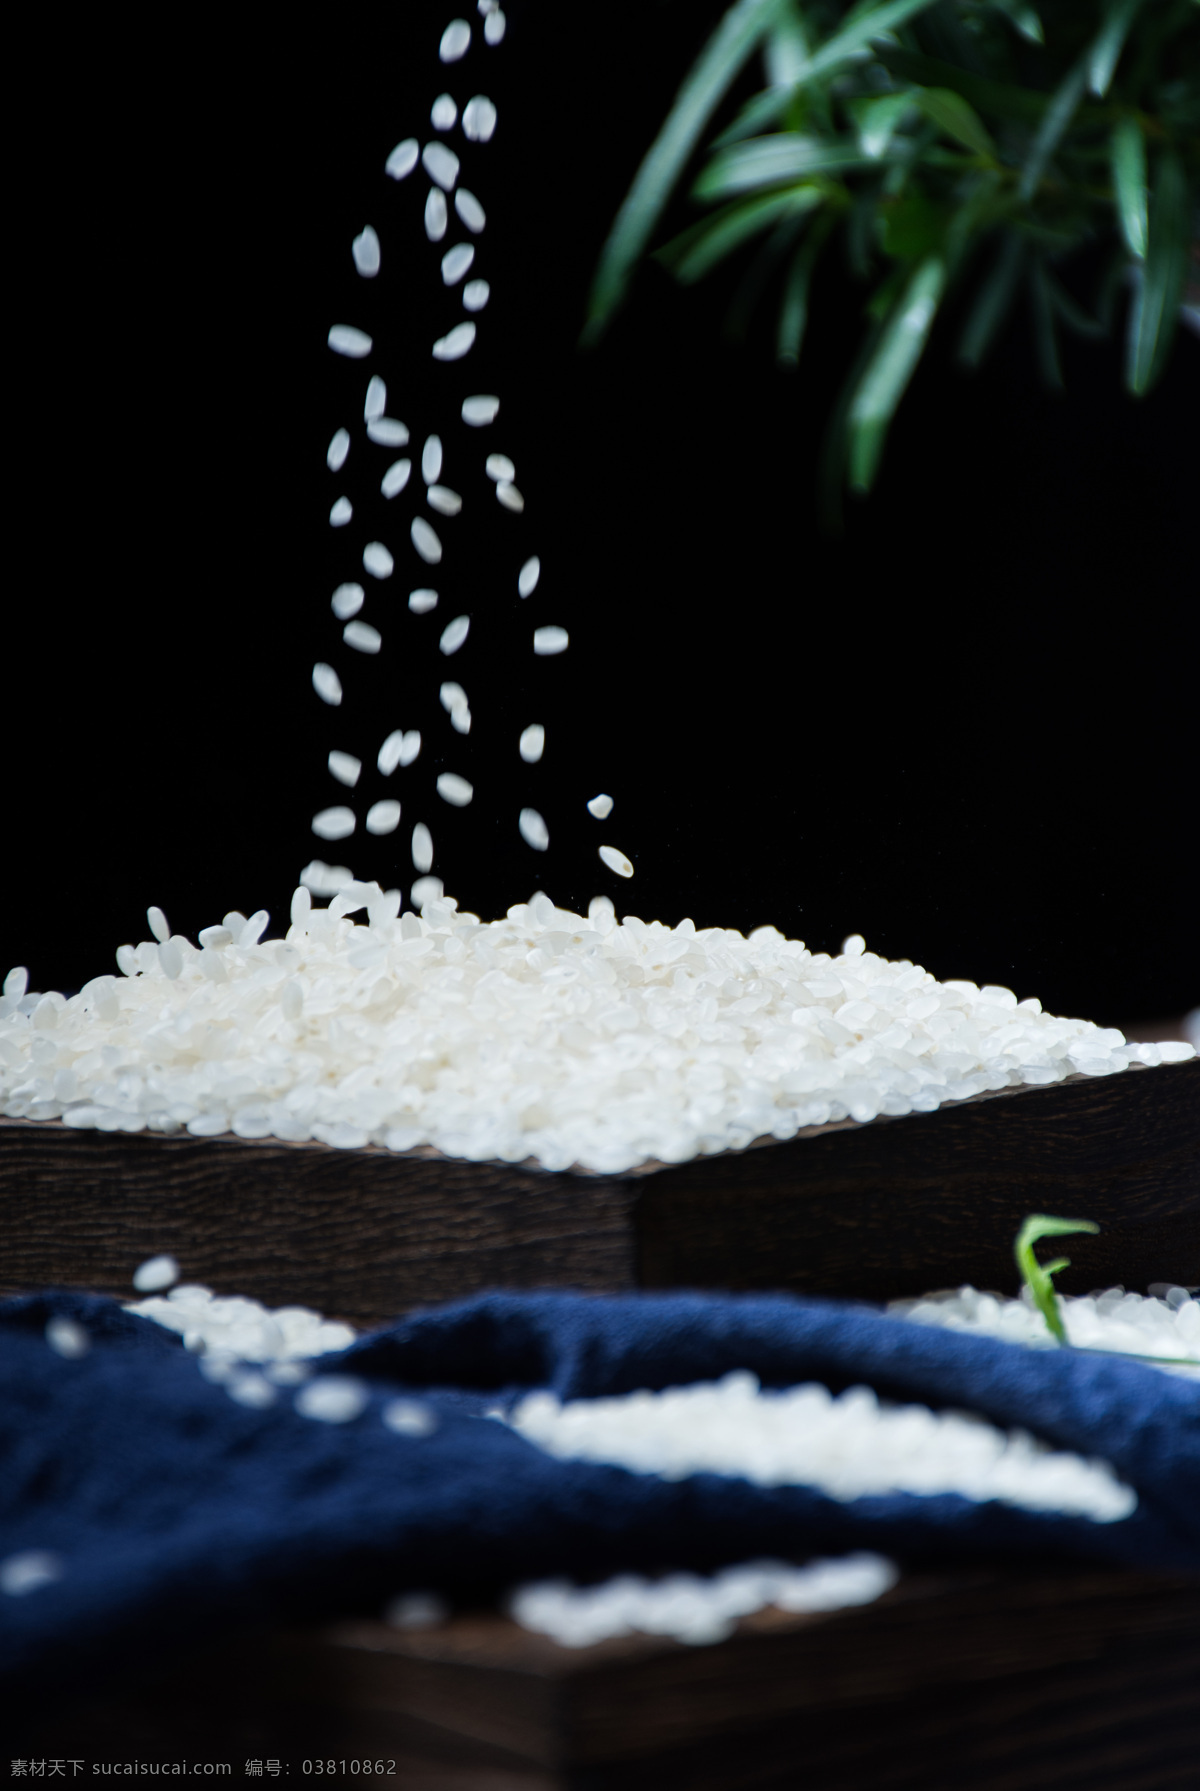 珍珠米 大米饭 米饭 大米 东北大米 粮食 食物 食品 餐饮美食 食物原料